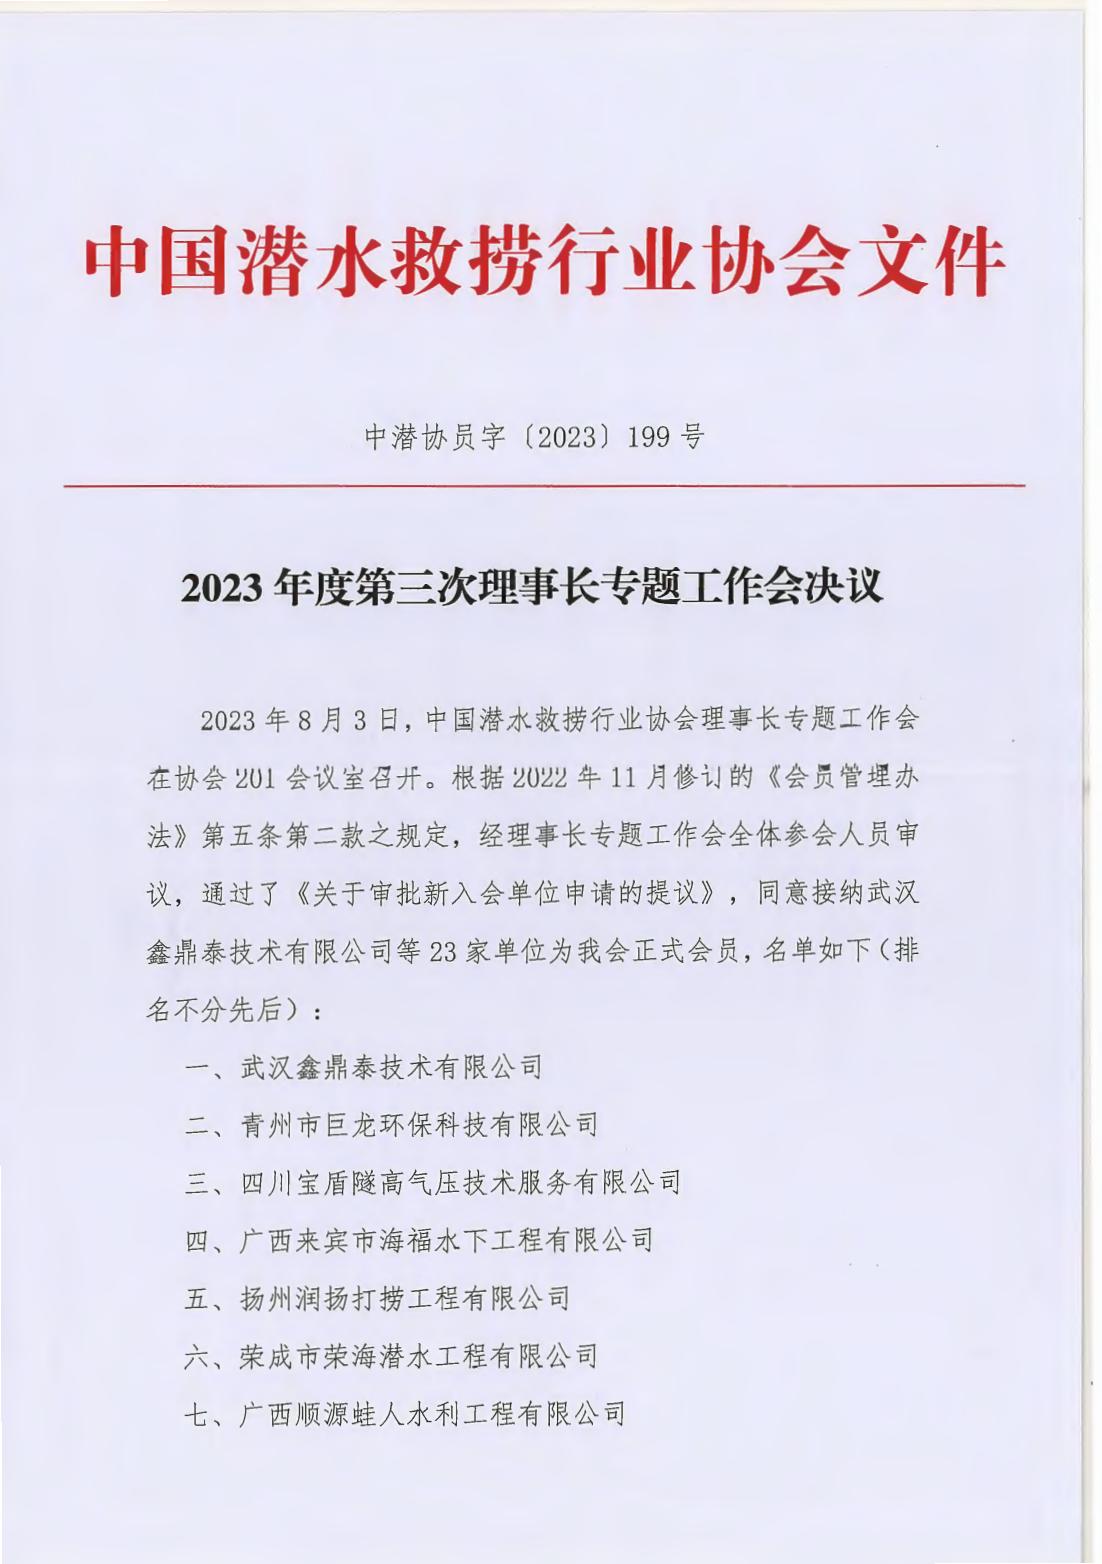 2023年8月3日理事长专项工作会议决议_00.jpg